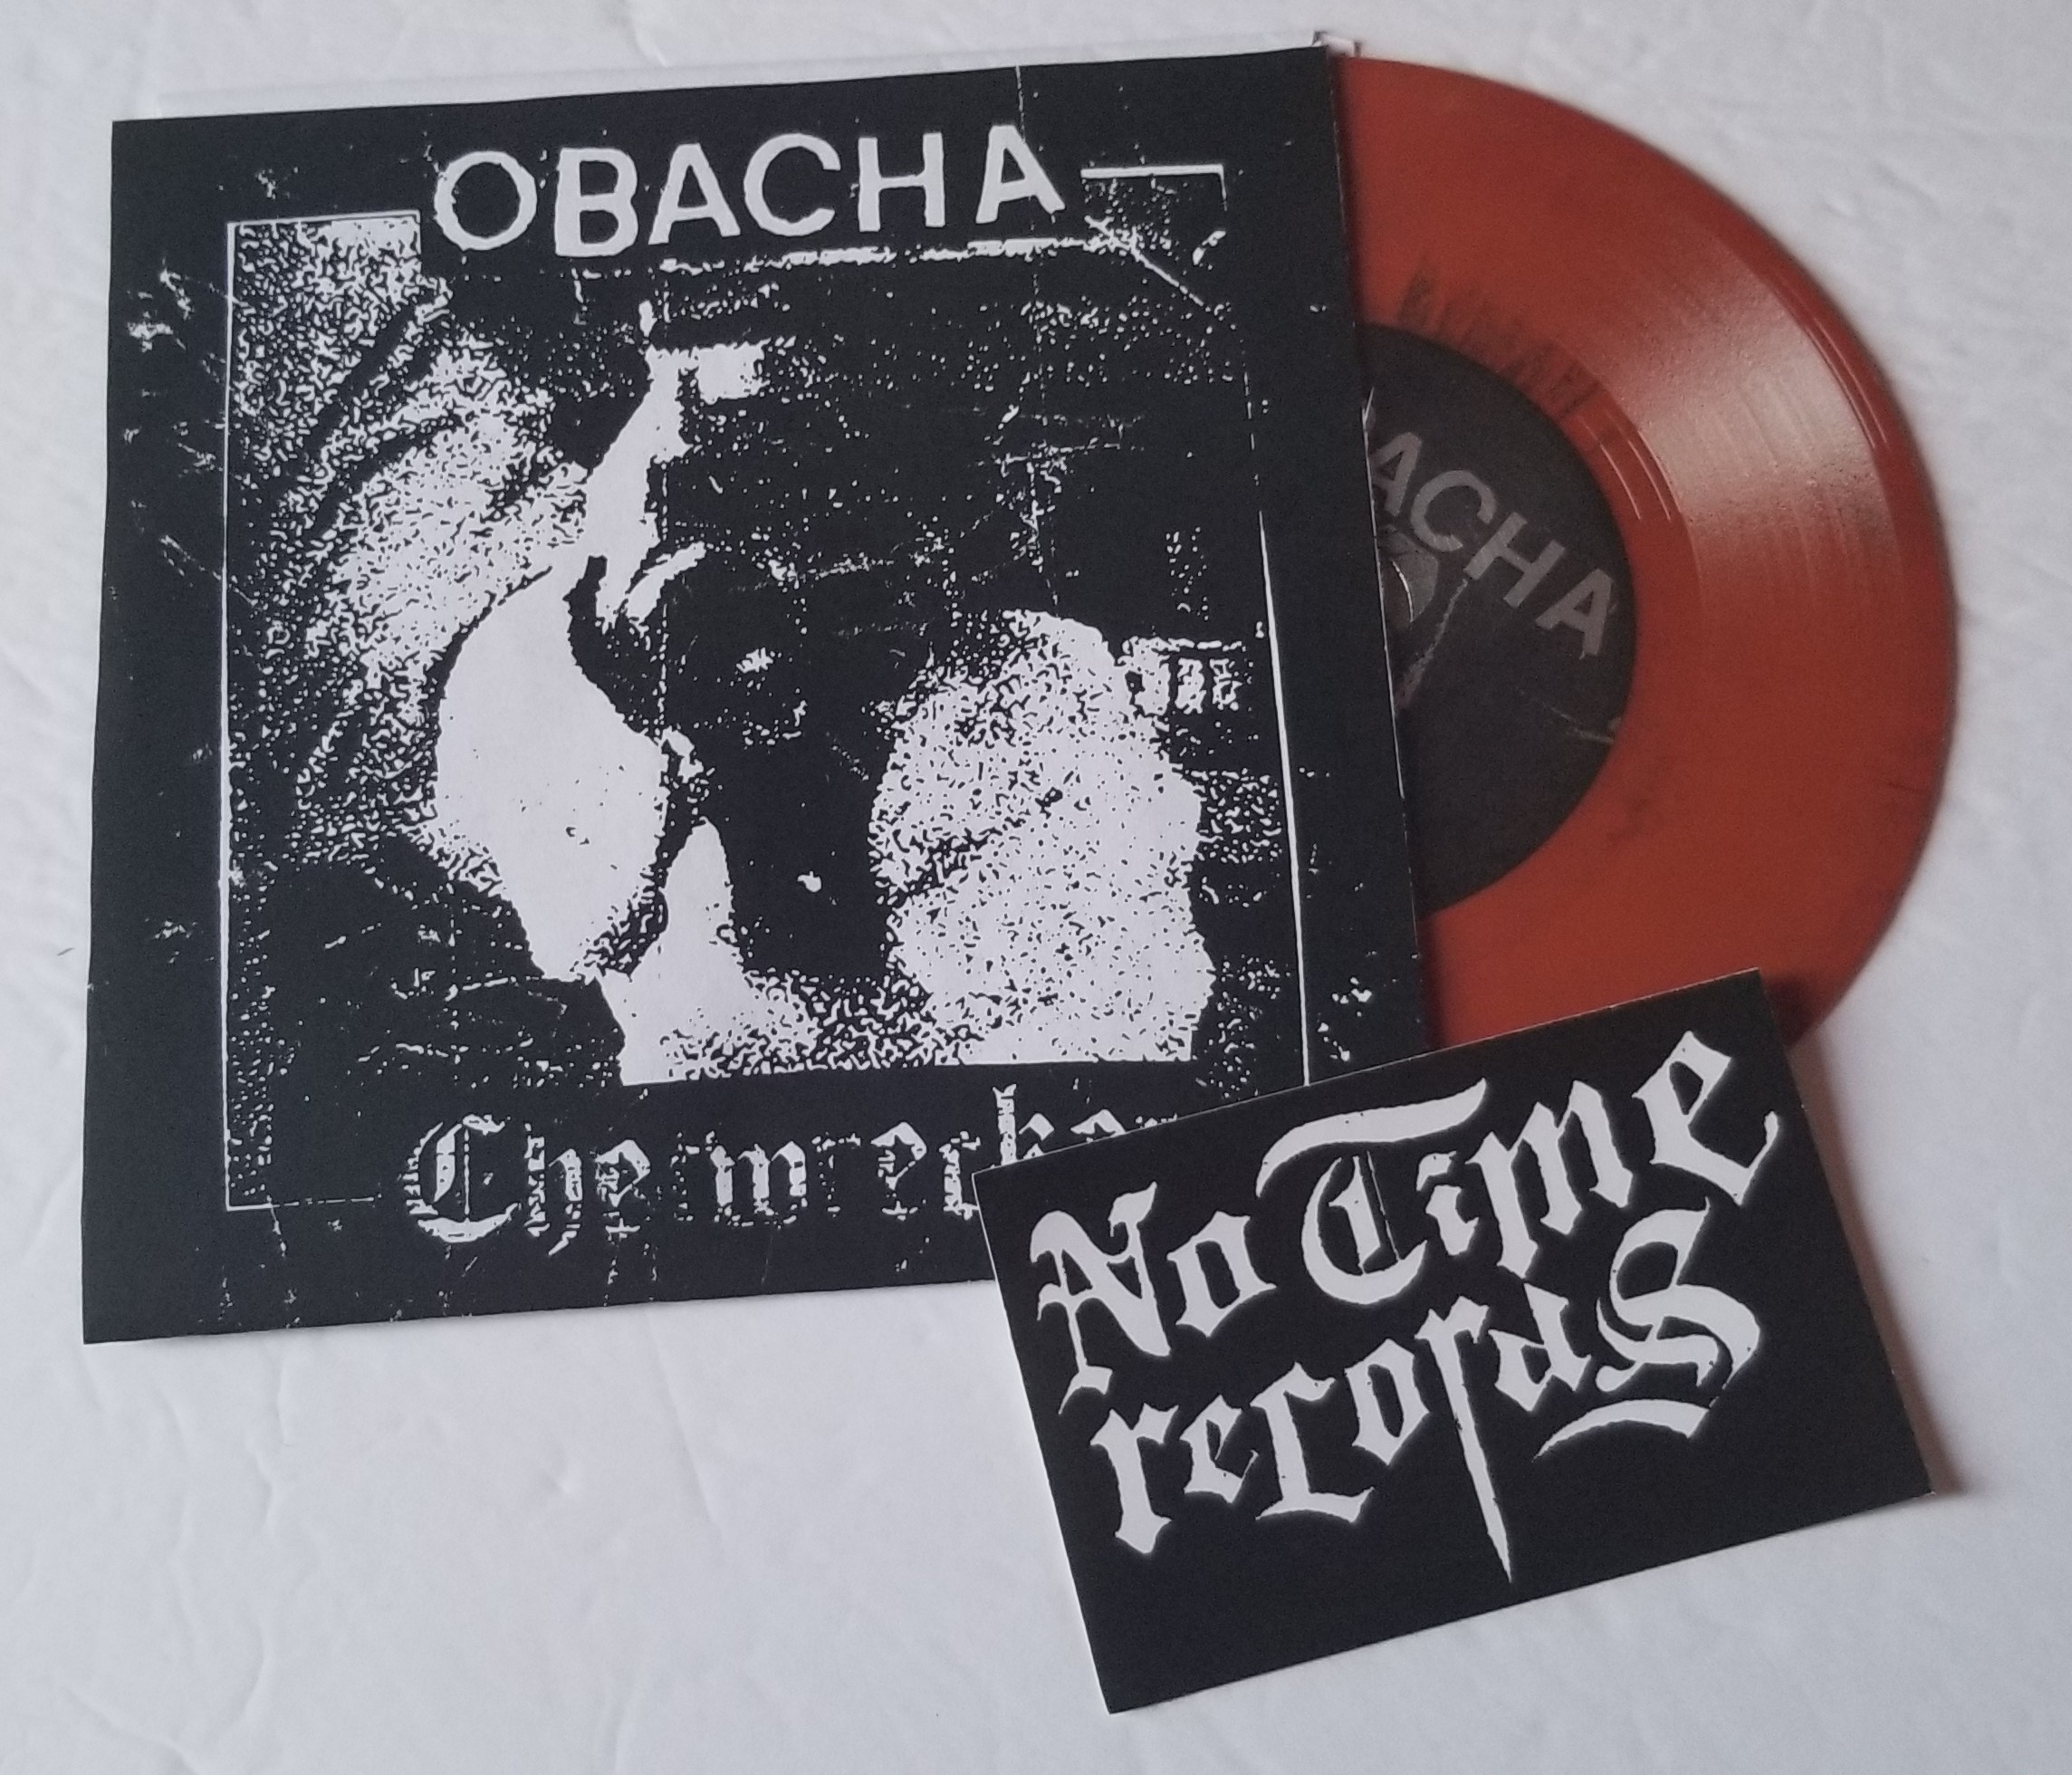 Obacha / Chetwrecker - Split 7"